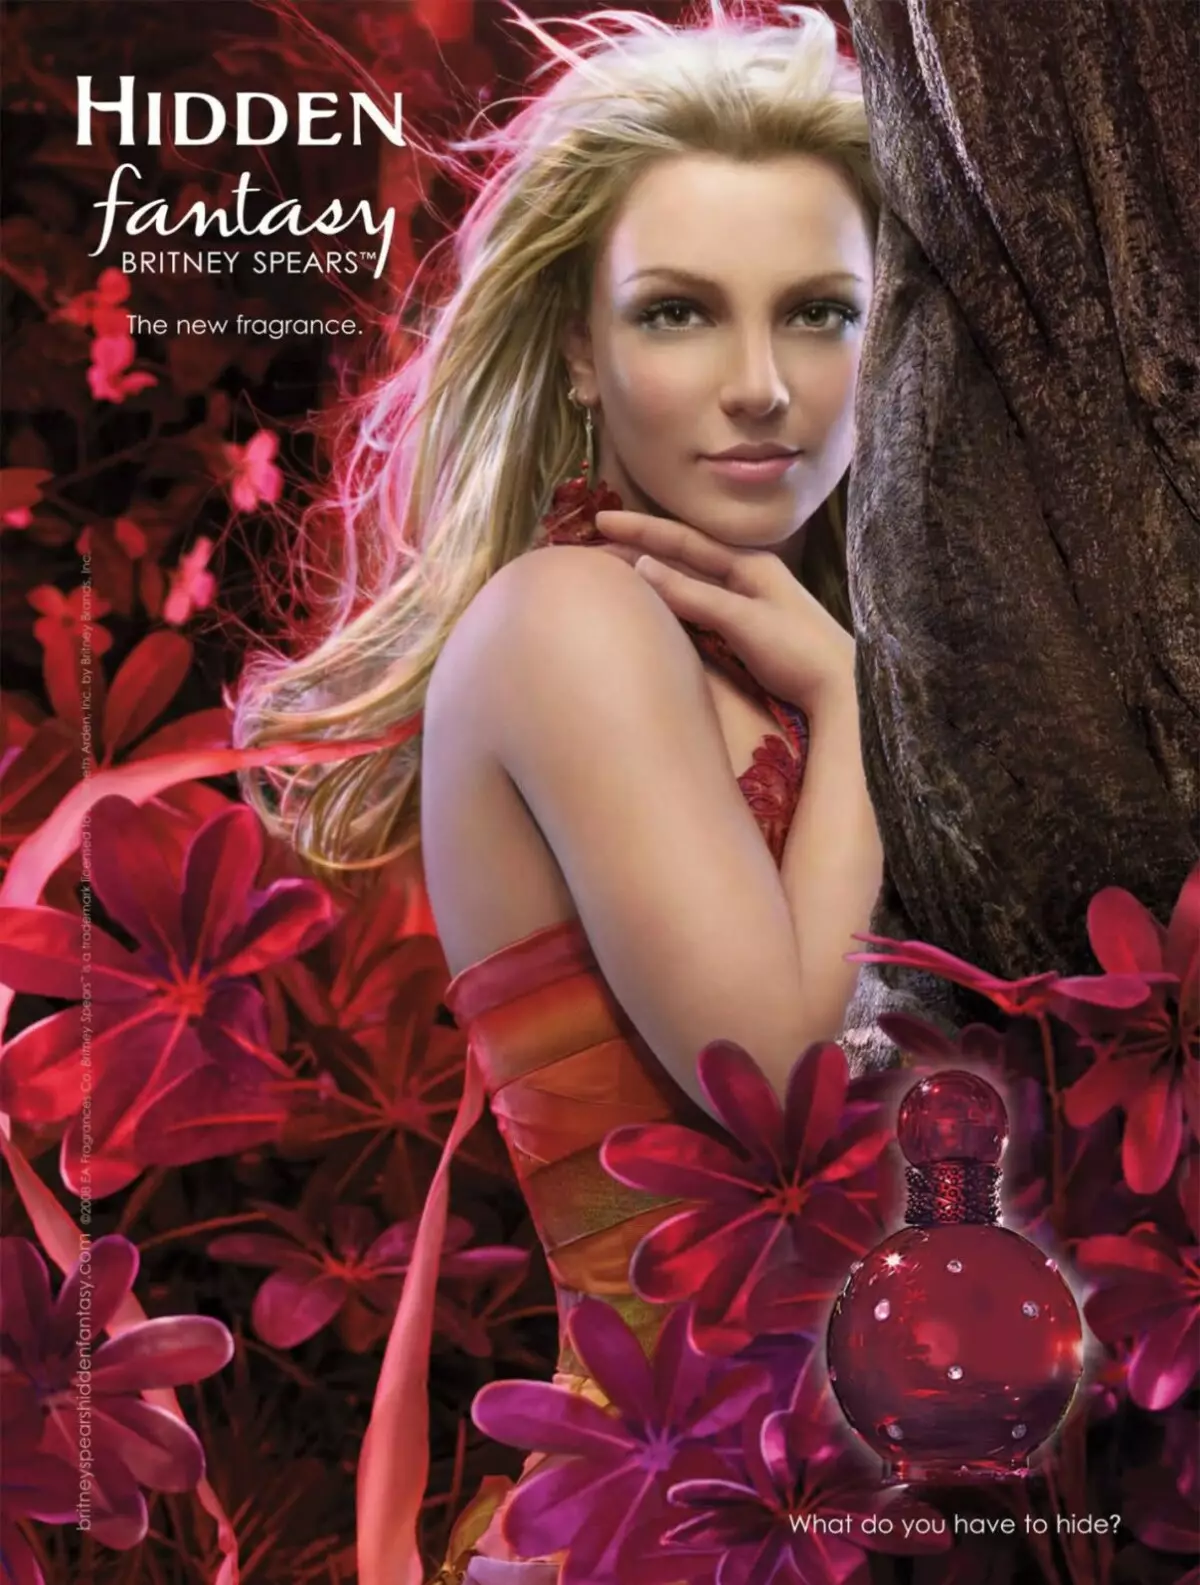 Perfuy Britney Spears: parfem i toaletna voda, fantazija, ponoćni fantazija i drugi okusi od marke 25313_8